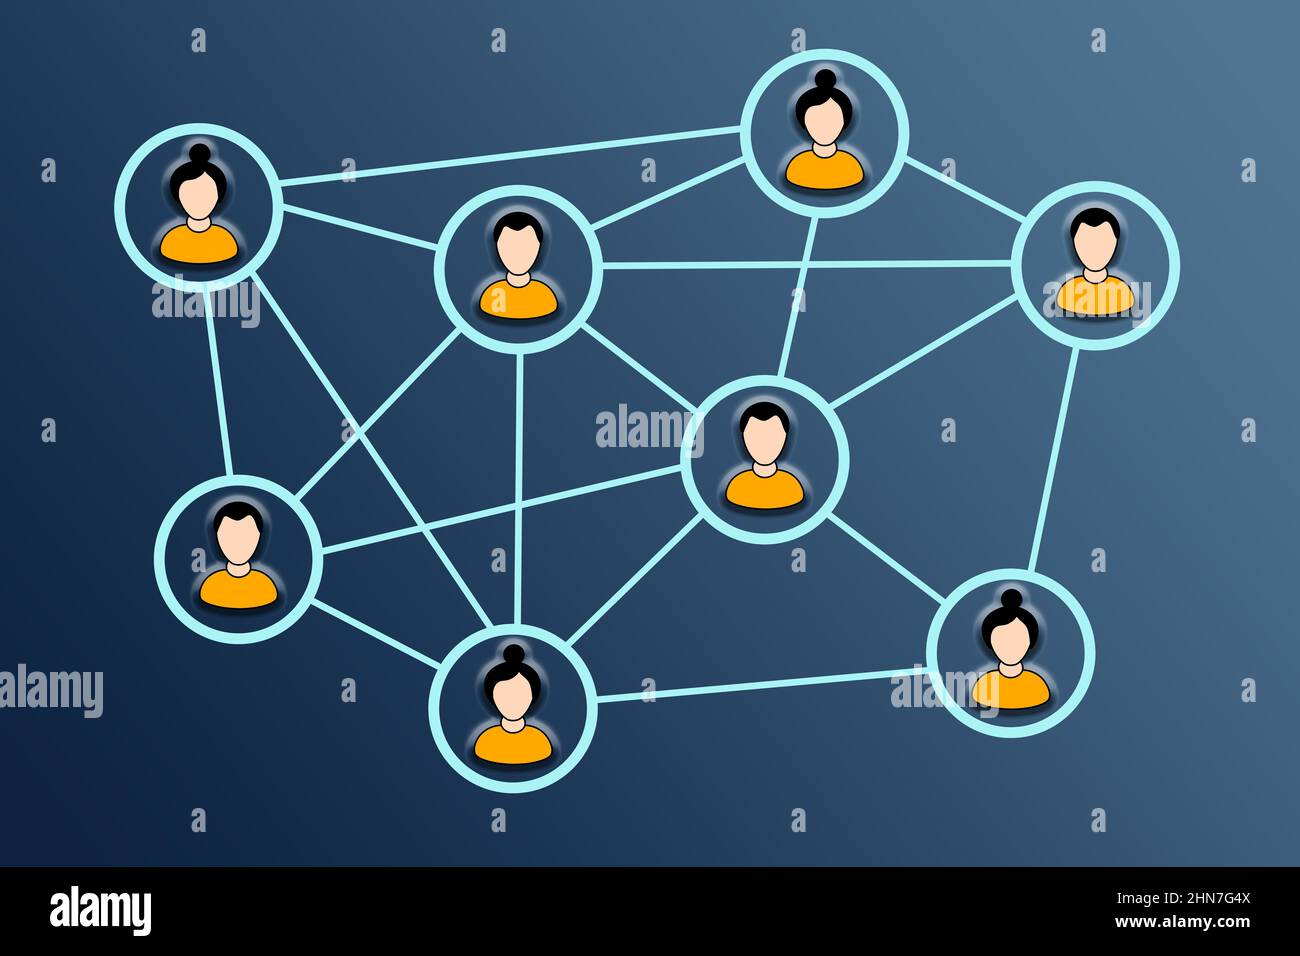 Travail d'équipe. Membres de l'équipe interconnectés dans un réseau, partageant des informations et des connaissances Banque D'Images